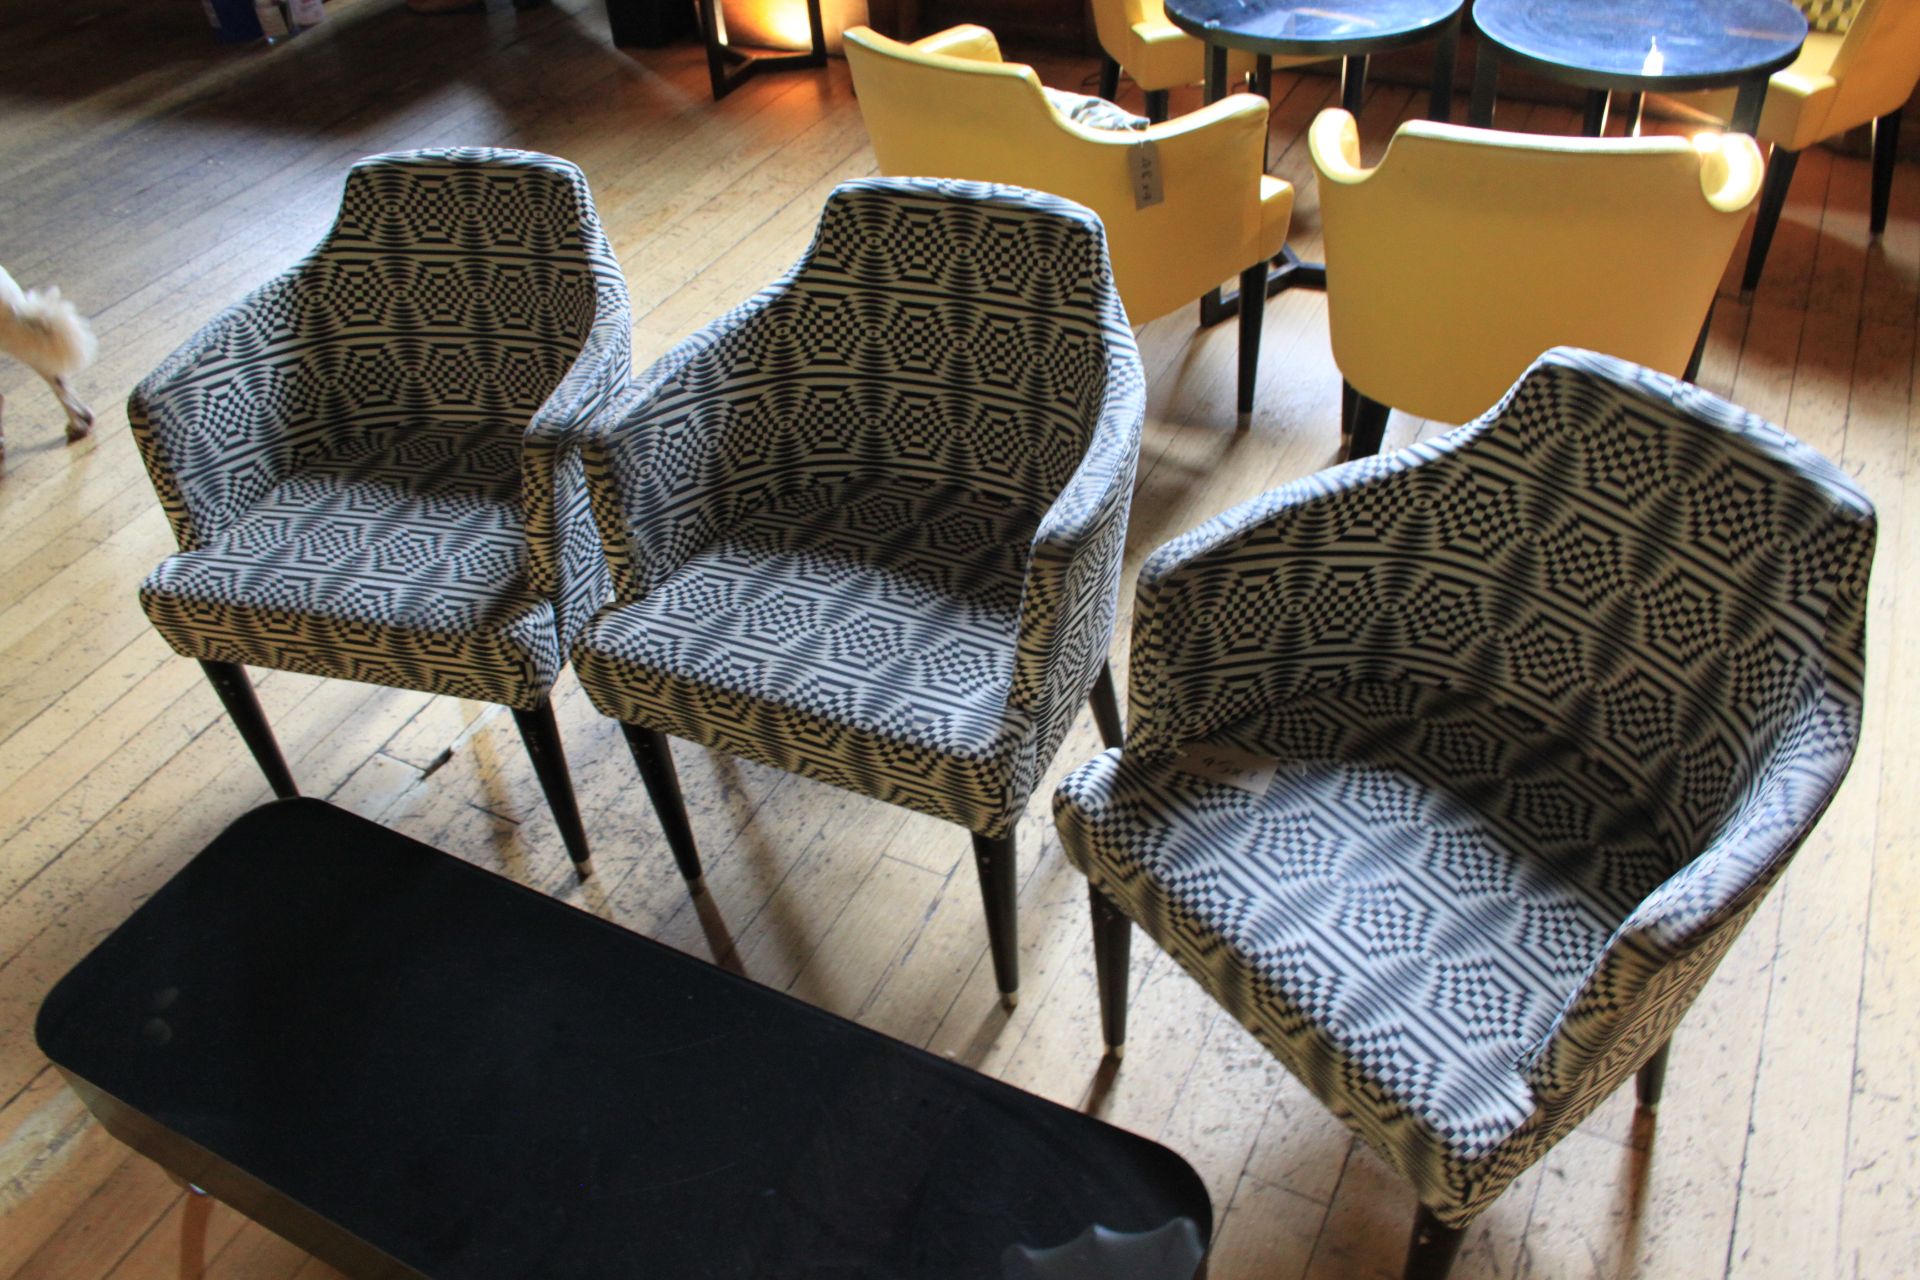 3 x Moroso Black & White Pattern Chairs Pitch 450 x 550w x 780h Mm